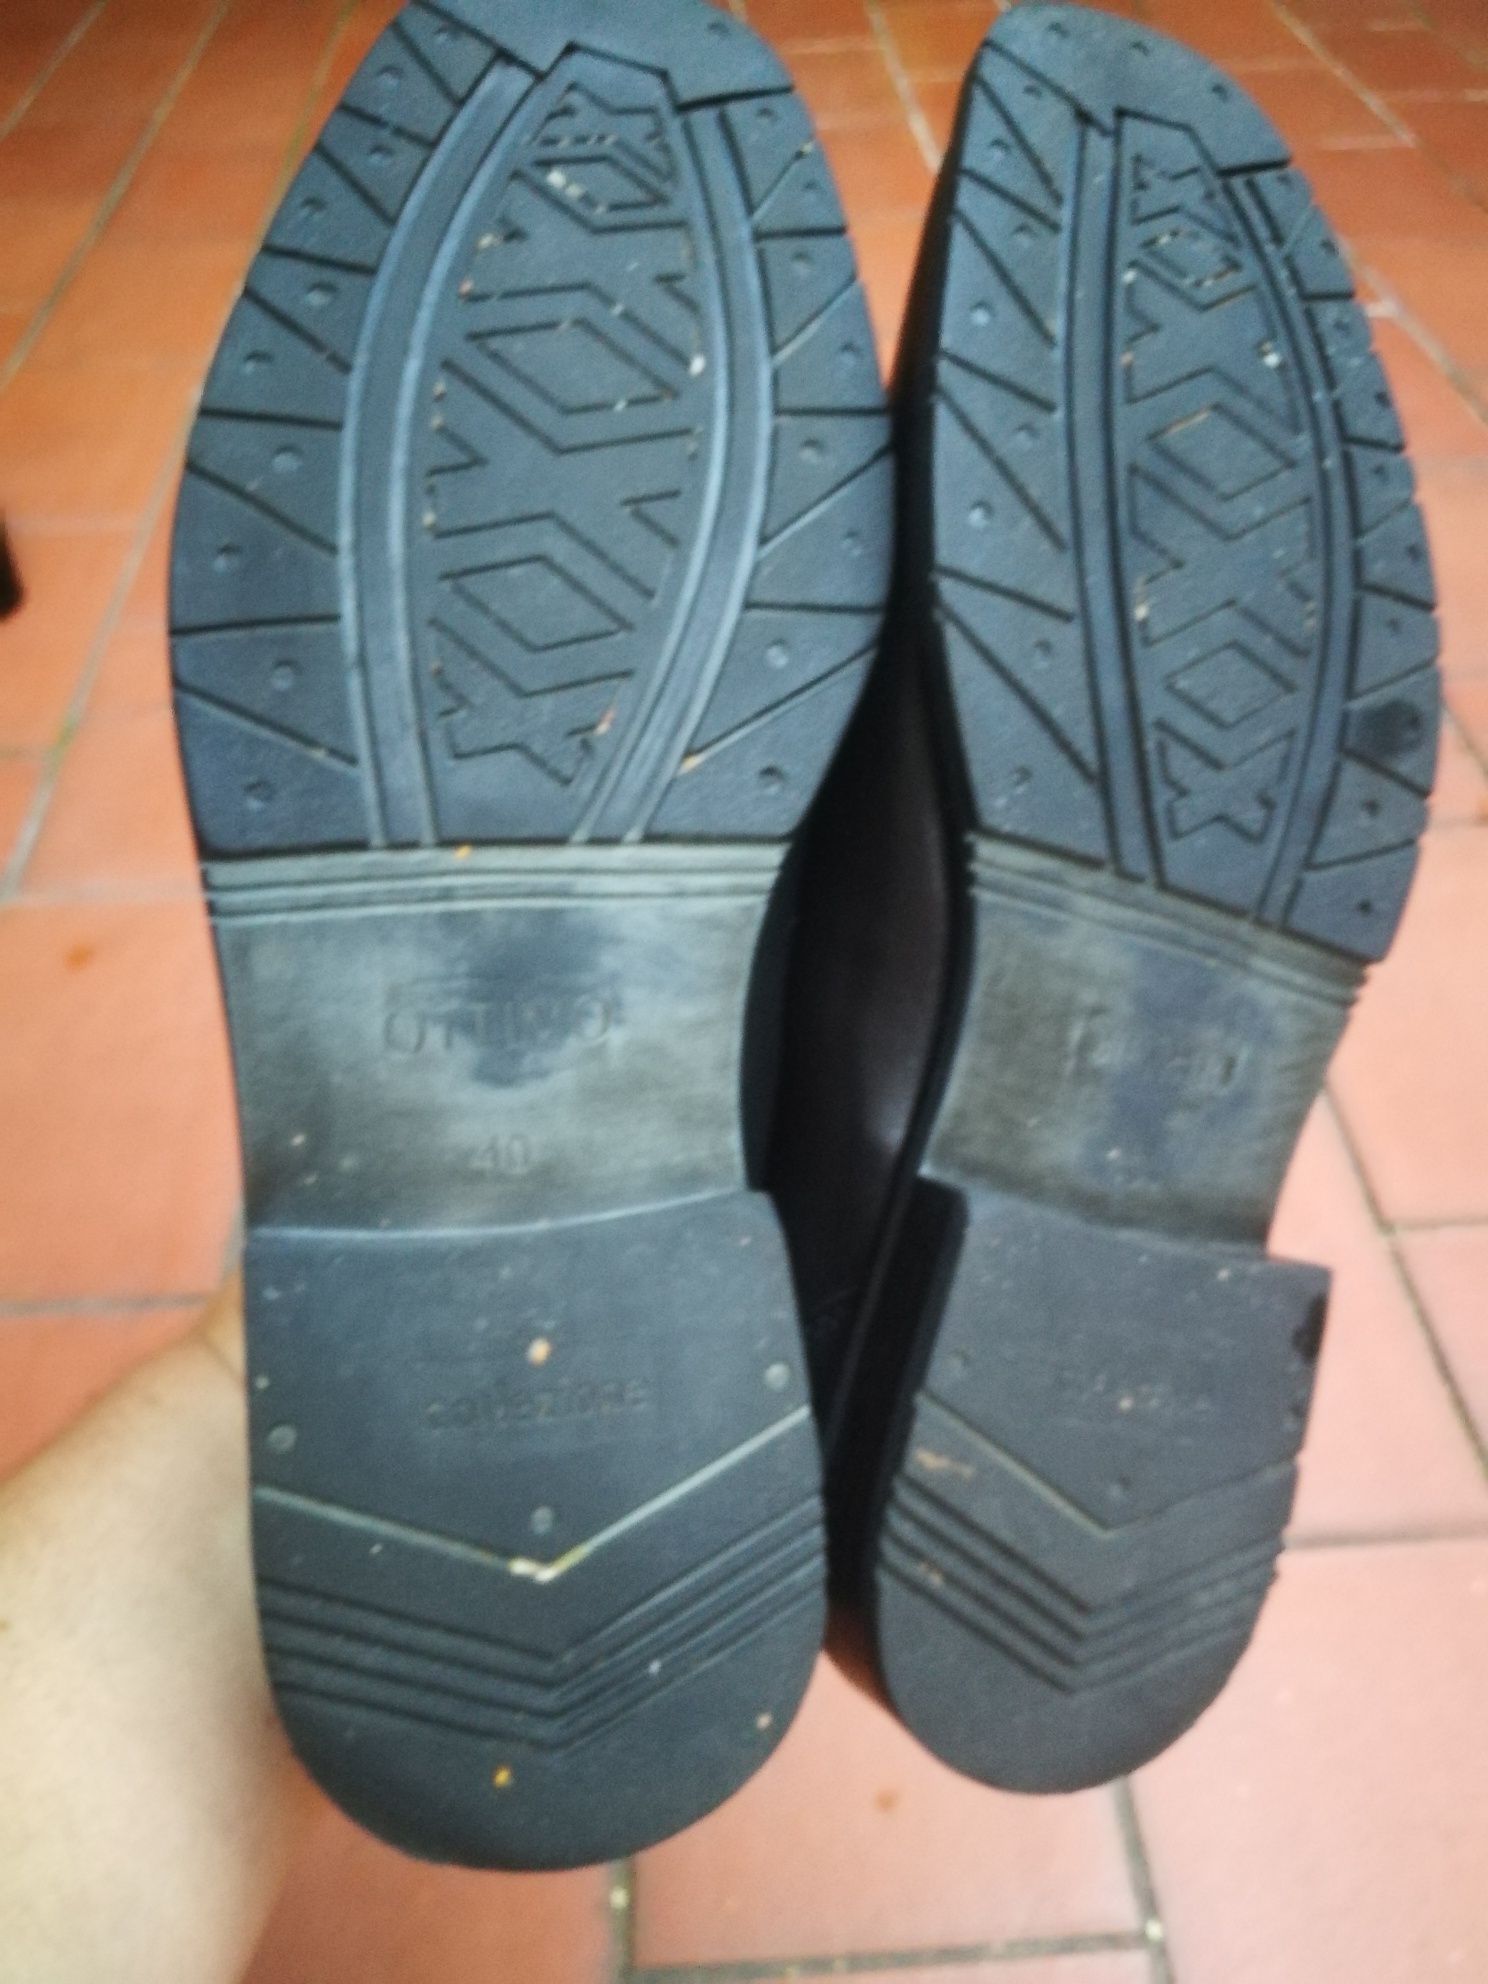 Buty męskie półbuty skórzane pantofle r.40  Ottimimo jak nowe